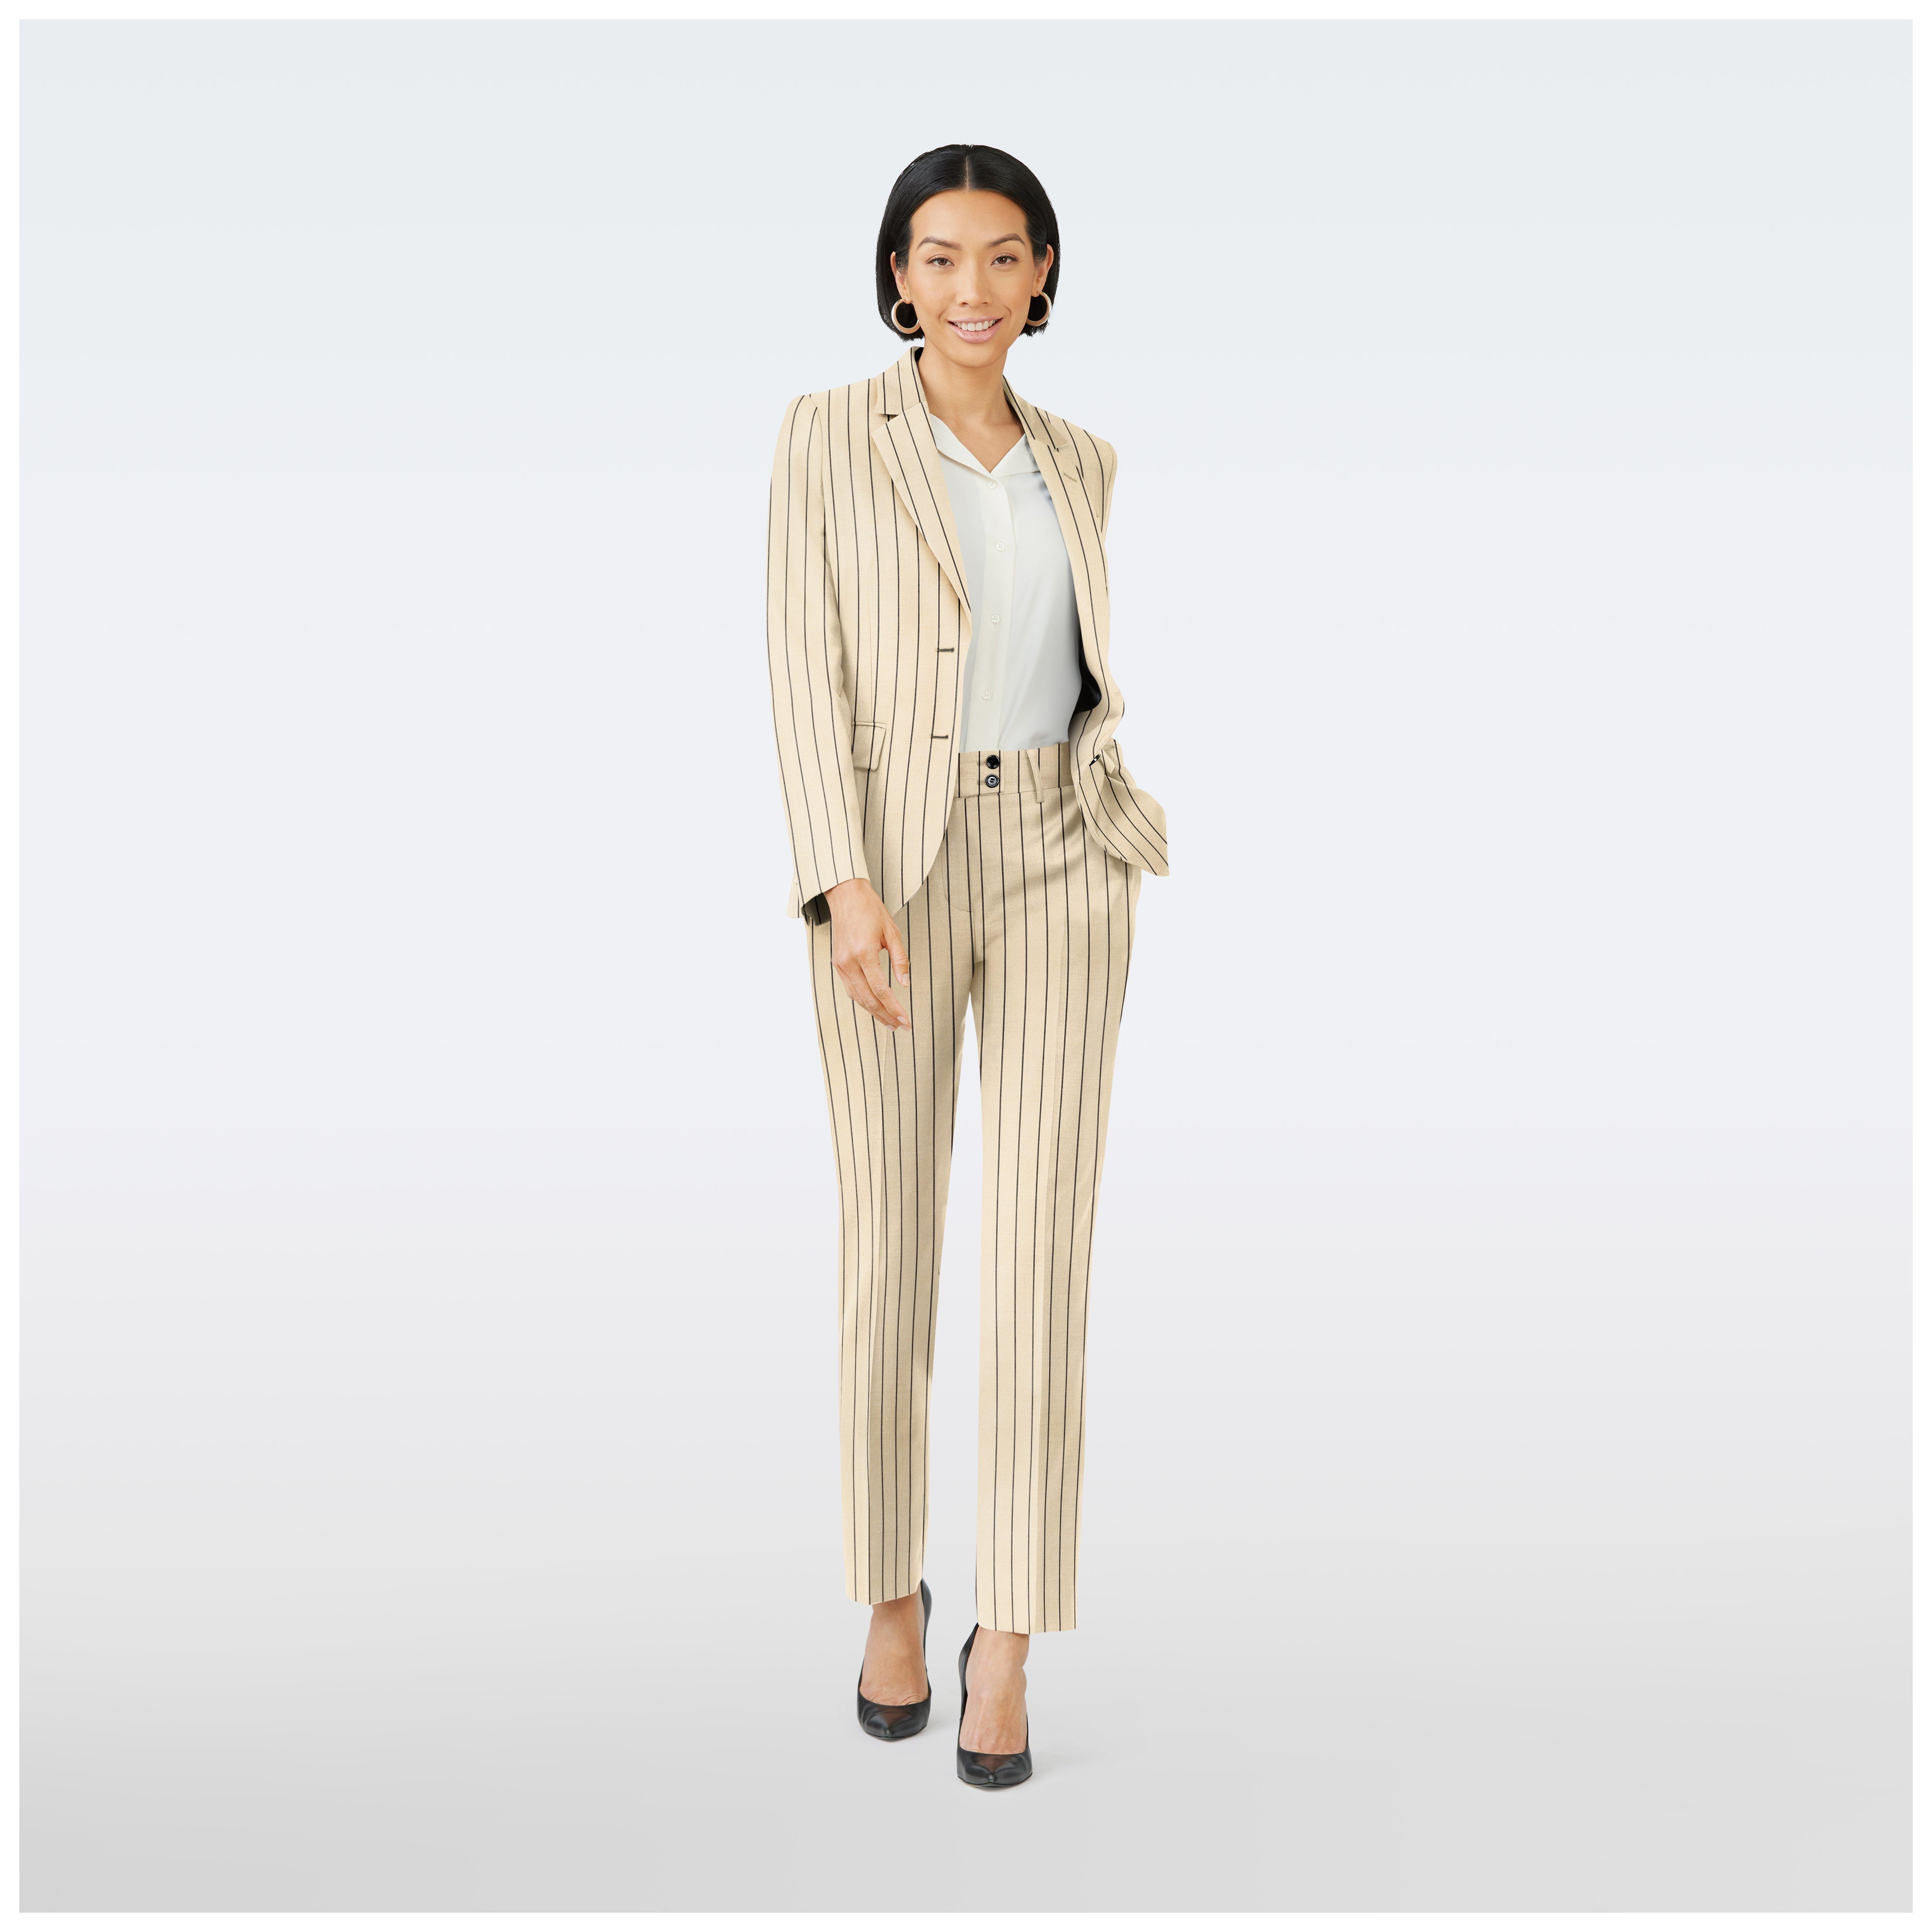 Amelis | Women's Three-Piece Suit: Blazer, Waistcoat, Trousers - Frobolous